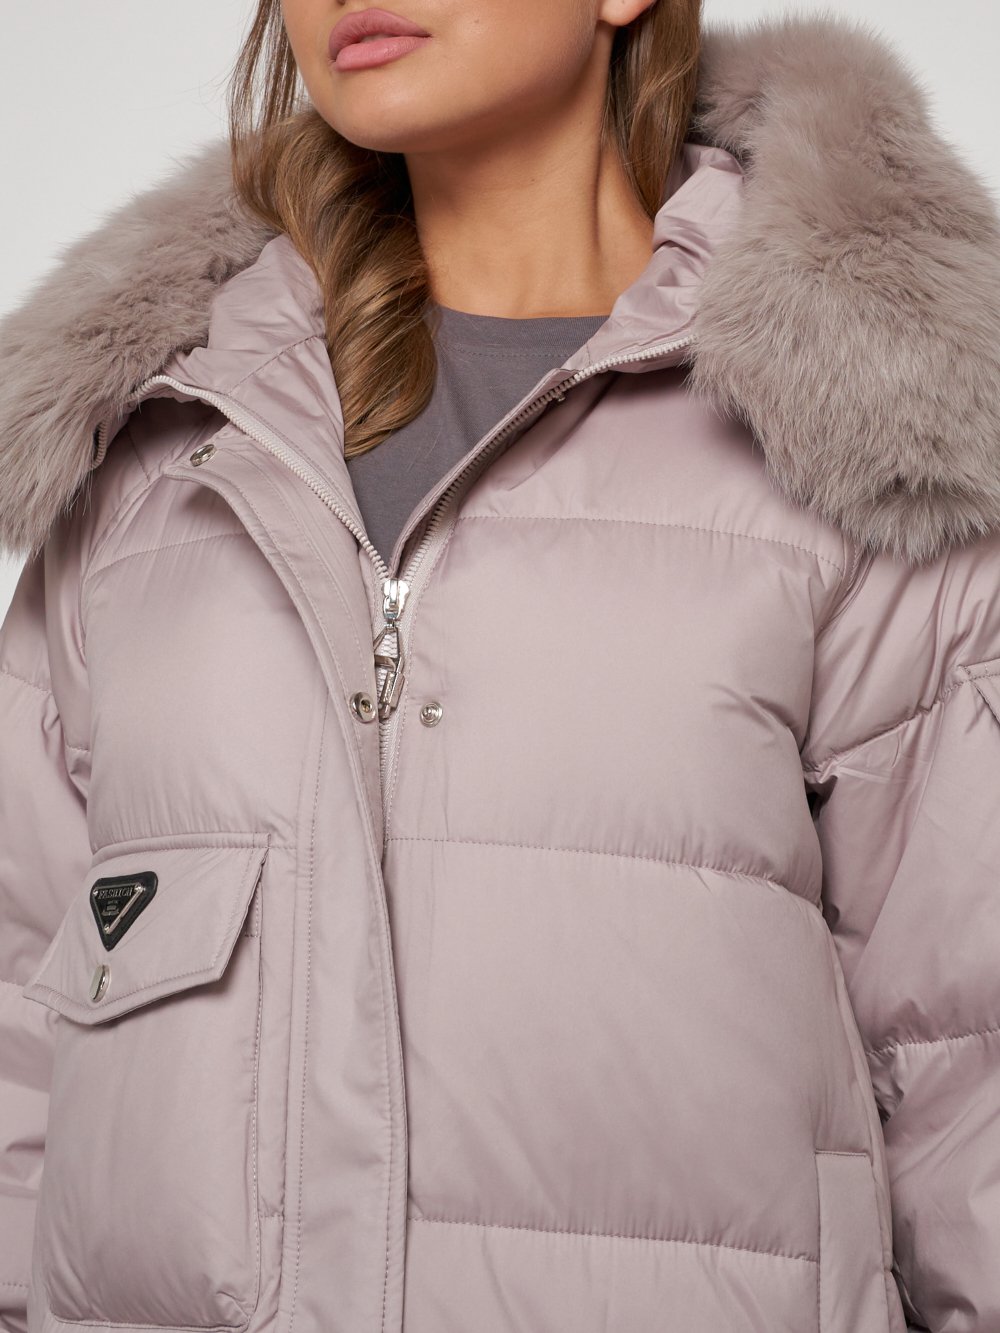 Купить куртку женскую оптом от производителя недорого в Москве 13301SK 1